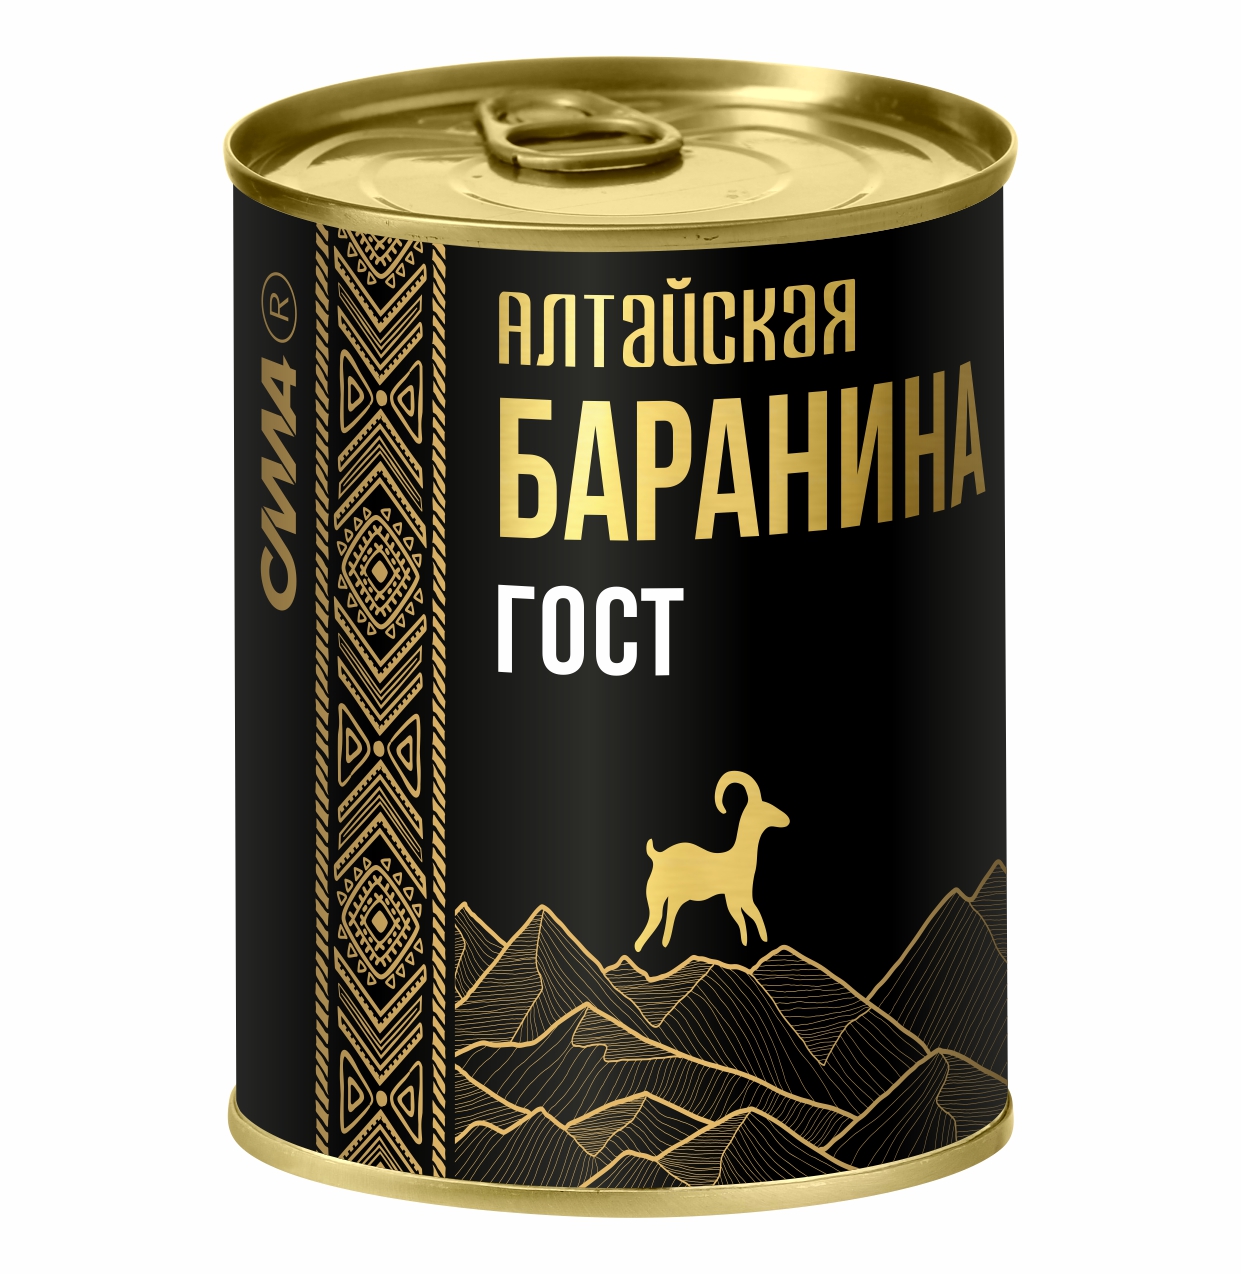 Алтайская баранина тушеная СИЛА ГОСТ, высший сорт, 338 г